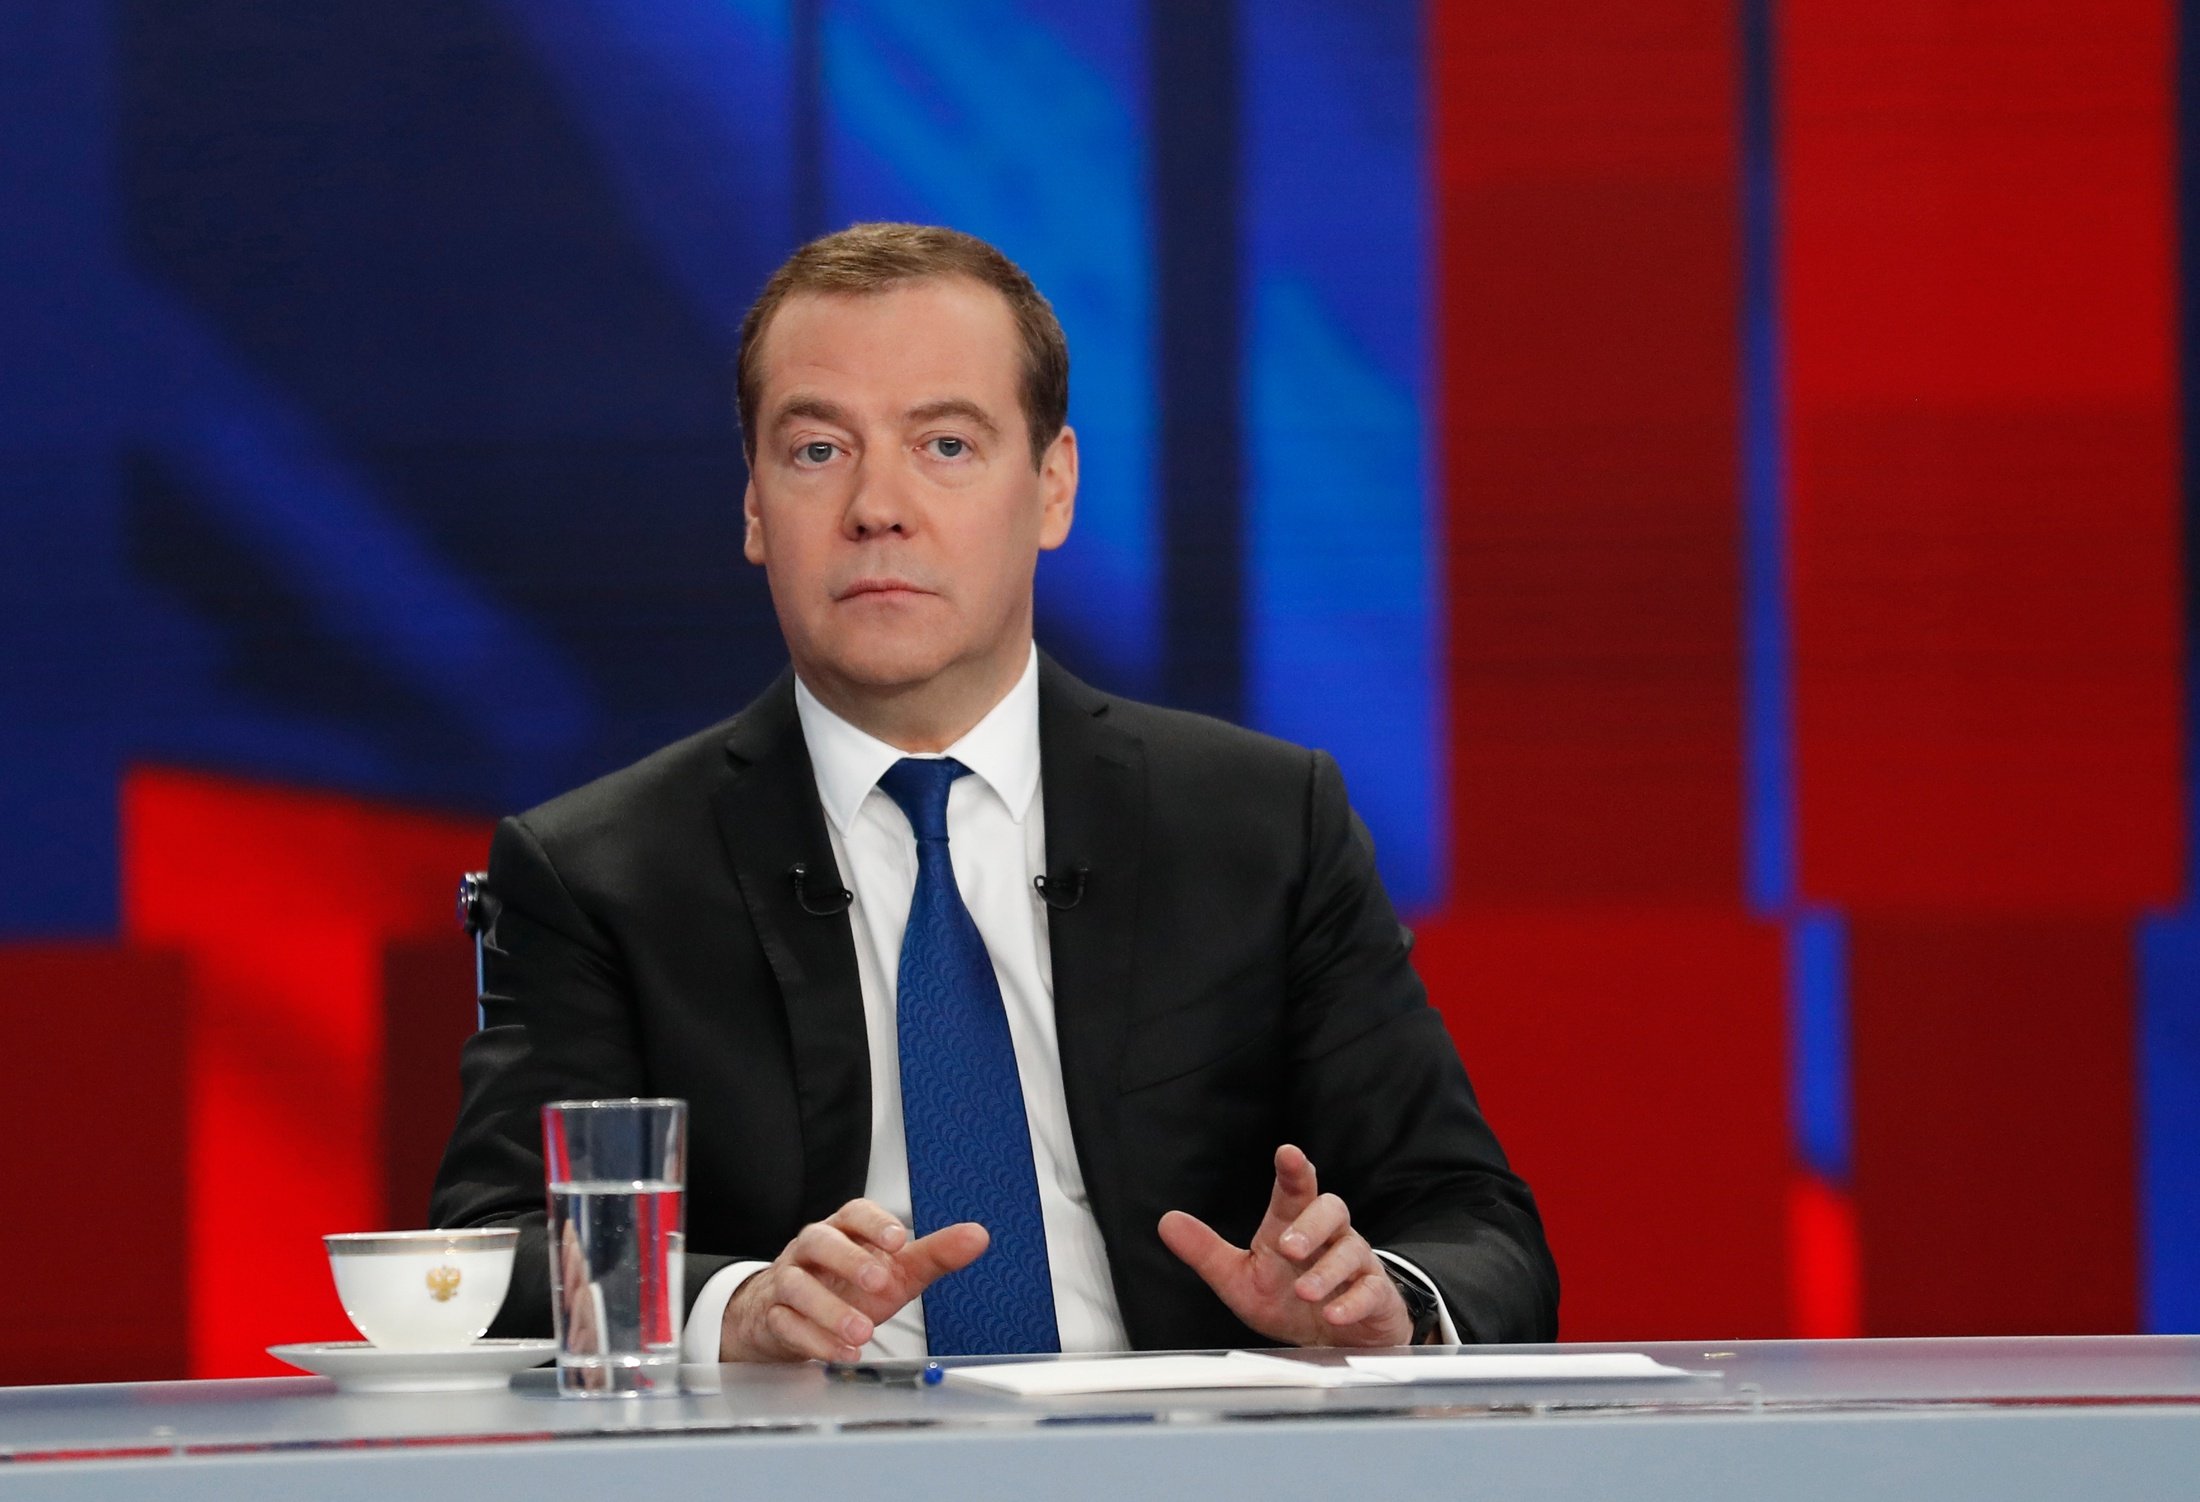 Стенограмма: О чем рассказал Дмитрий Медведев в интервью российским  телеканалам - Российская газета